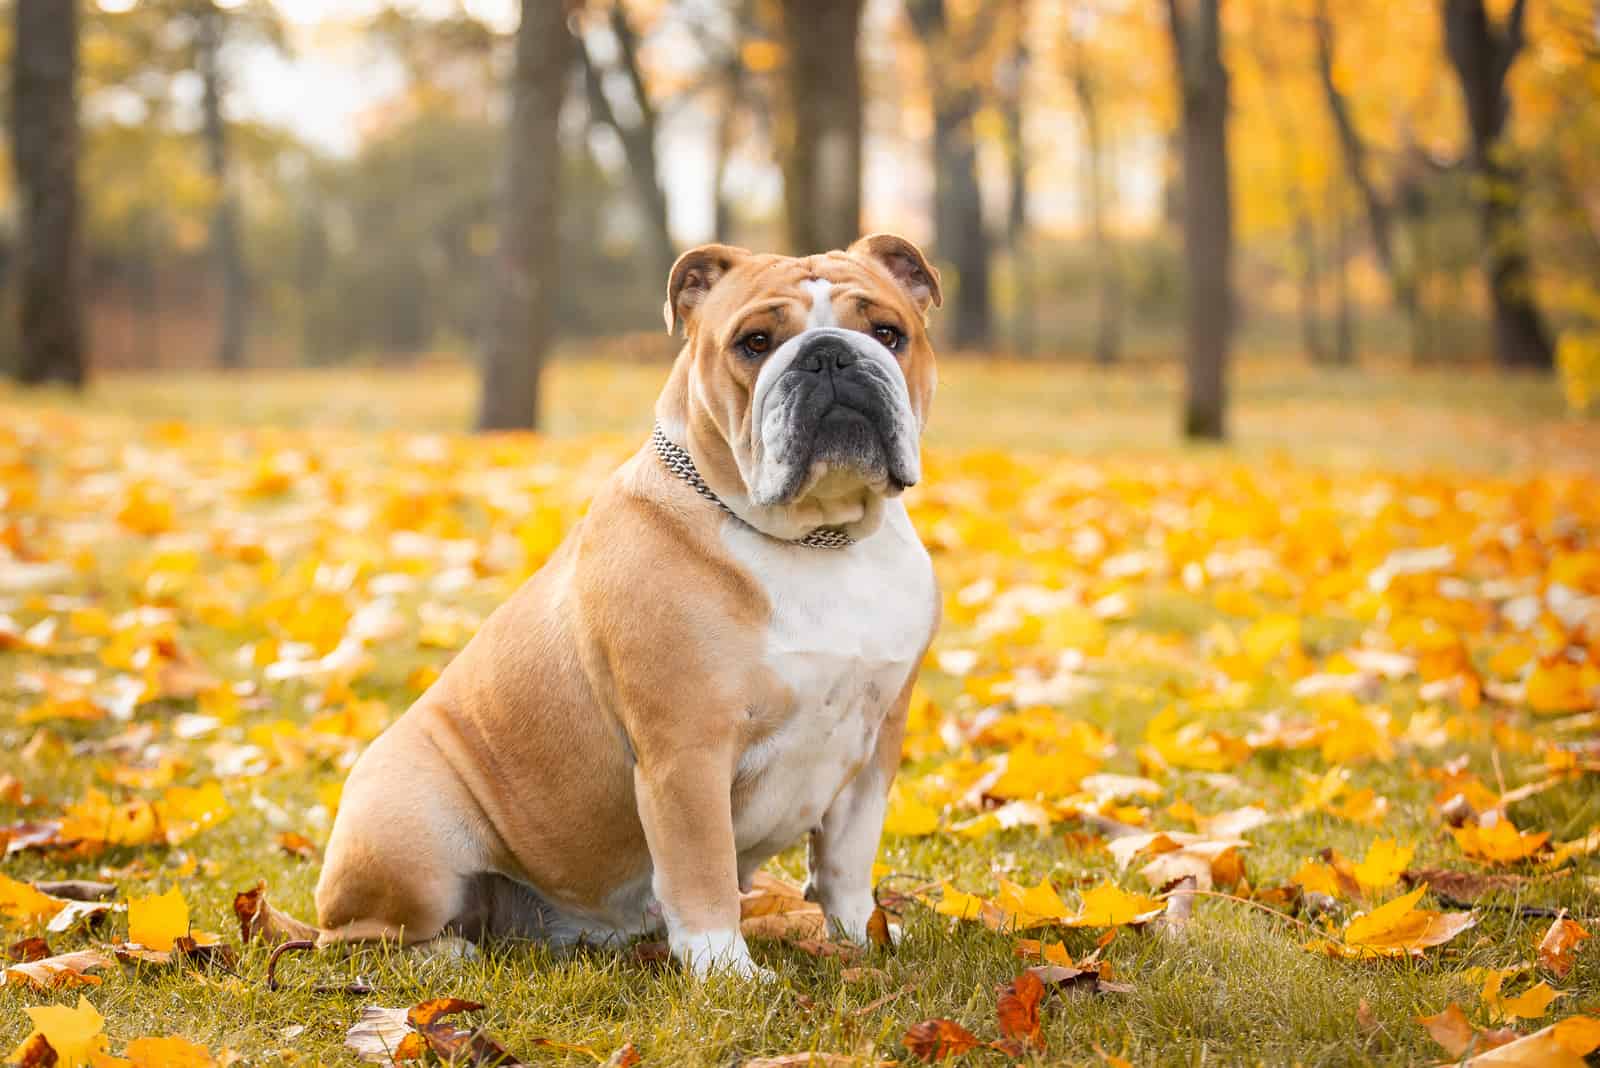 English Bulldog sitting in an autumn park